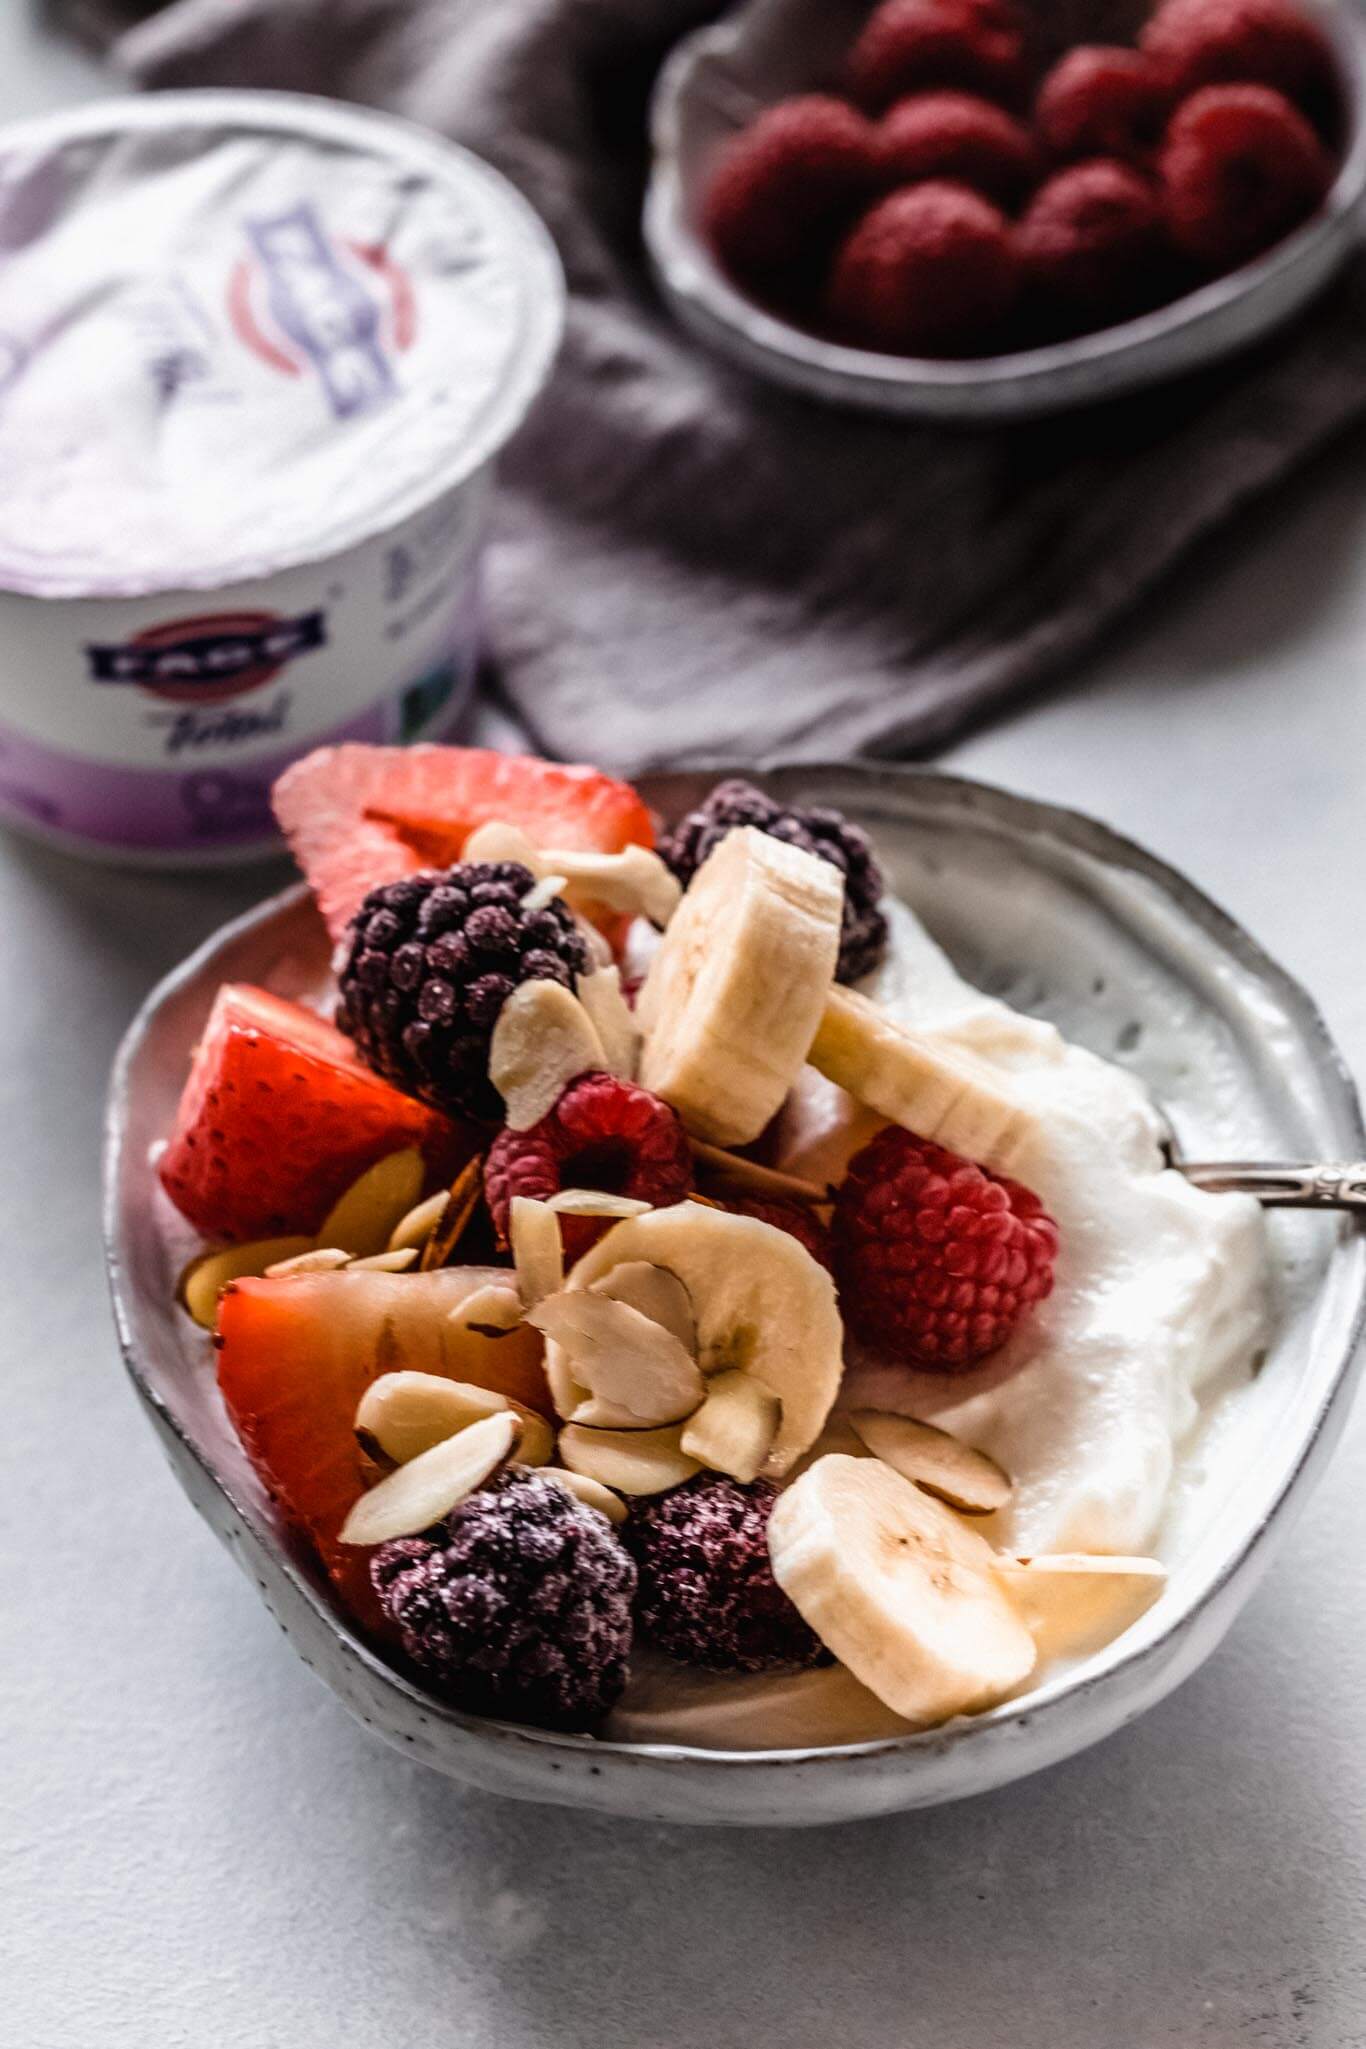 Yogurt topped with berries & banana.